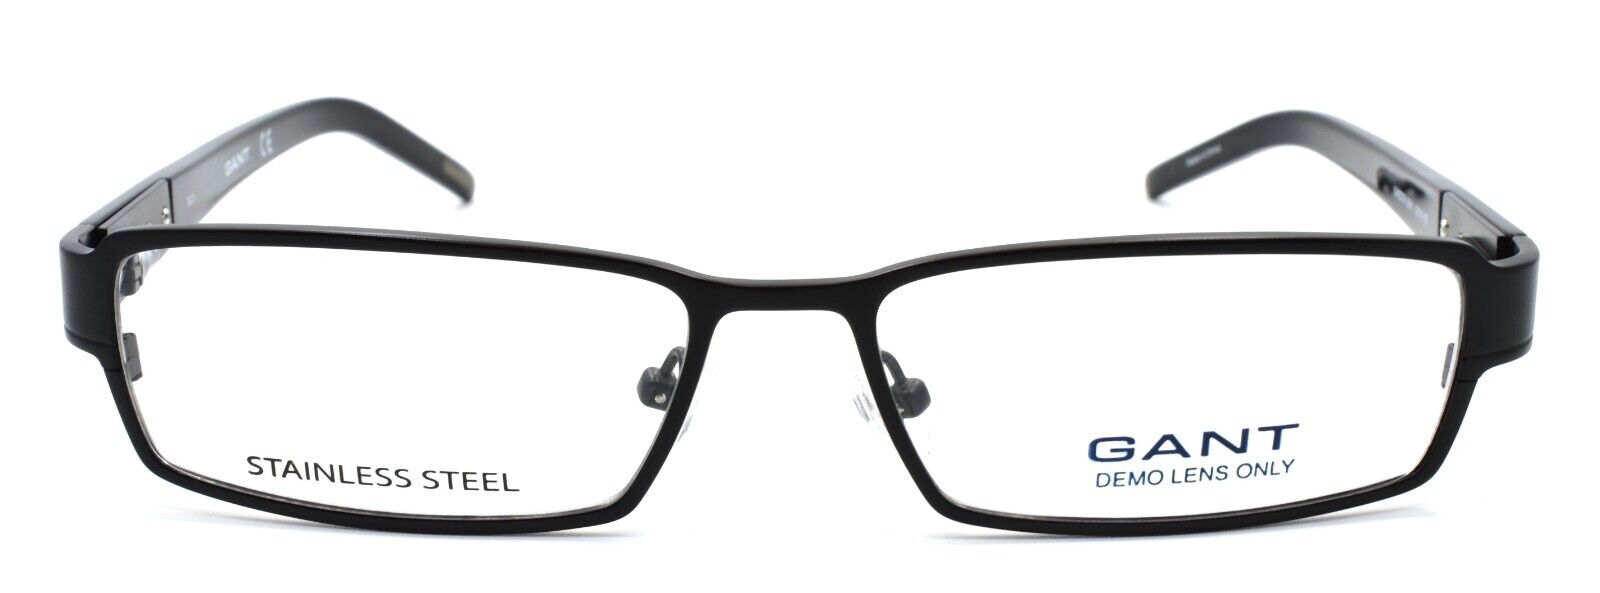 2-GANT G Hester SBLK Women's Eyeglasses Frames 53-15-135 Satin Black-715583058330-IKSpecs